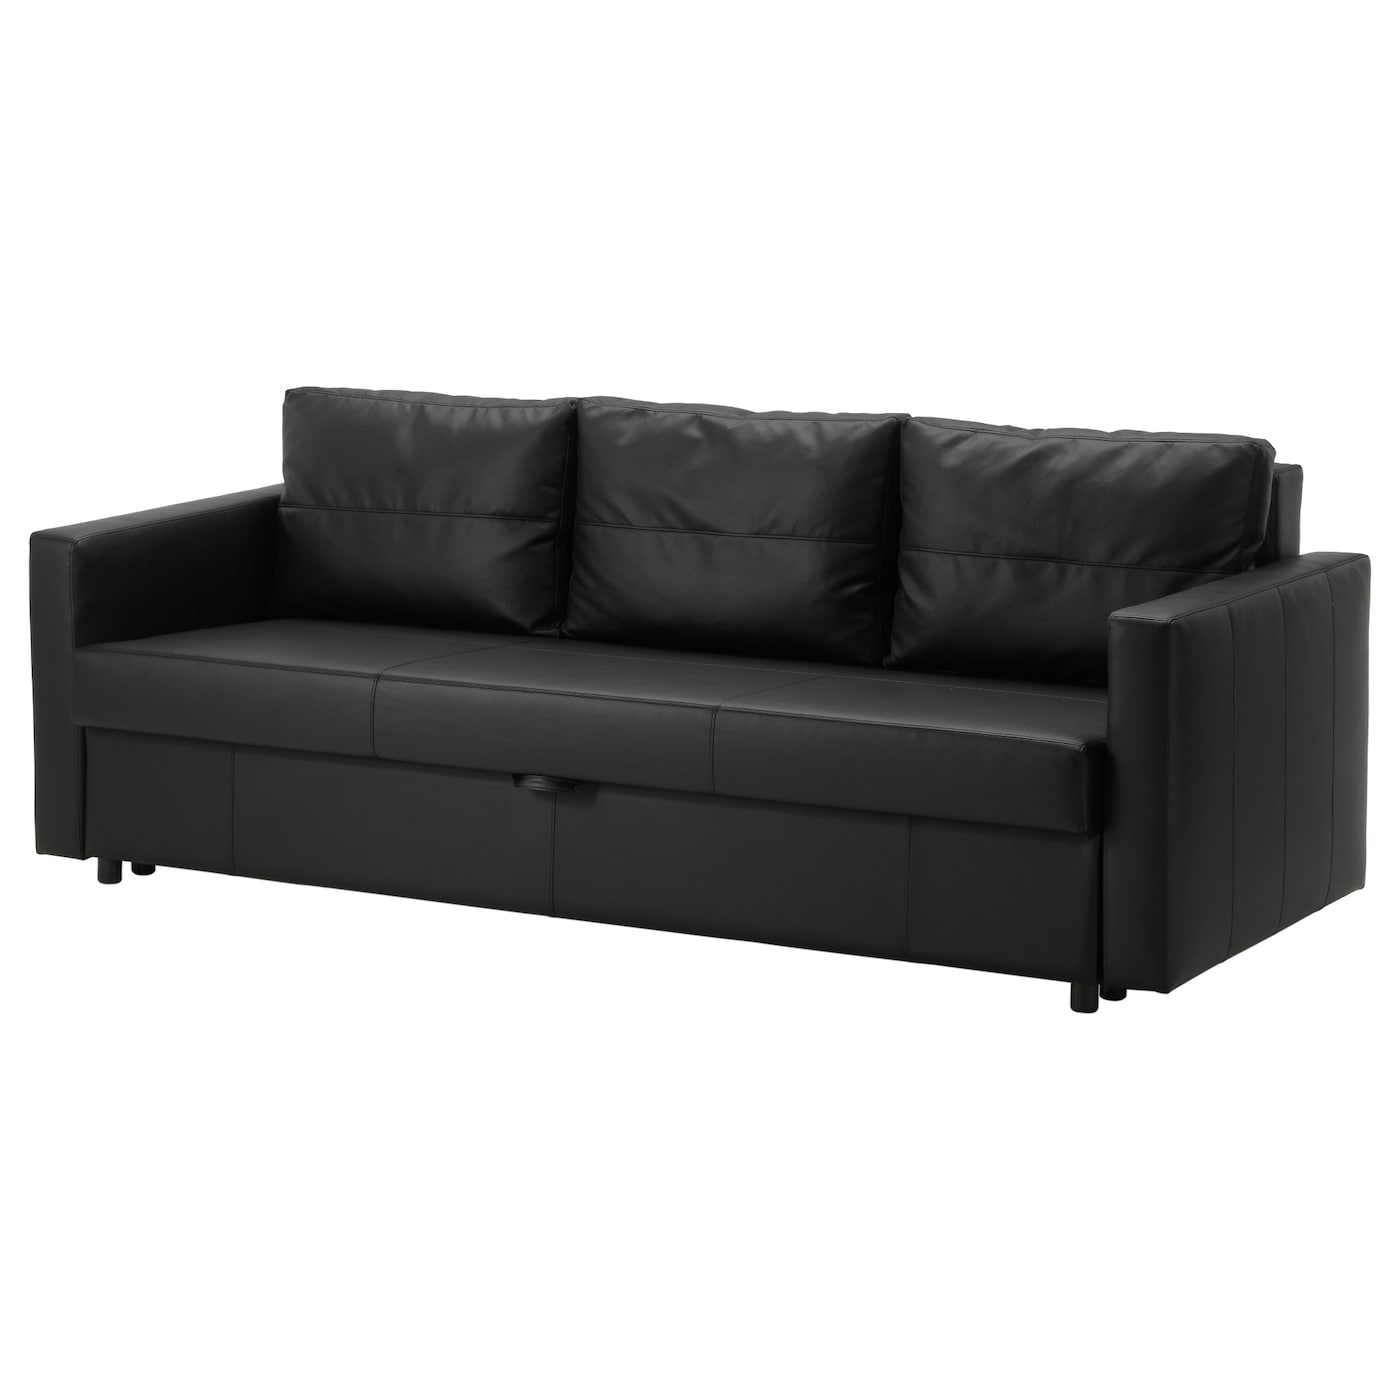 ФРИХЕТЕН 3 дивана-кровати с откидной спинкой, Бомстад черный FRIHETEN IKEA